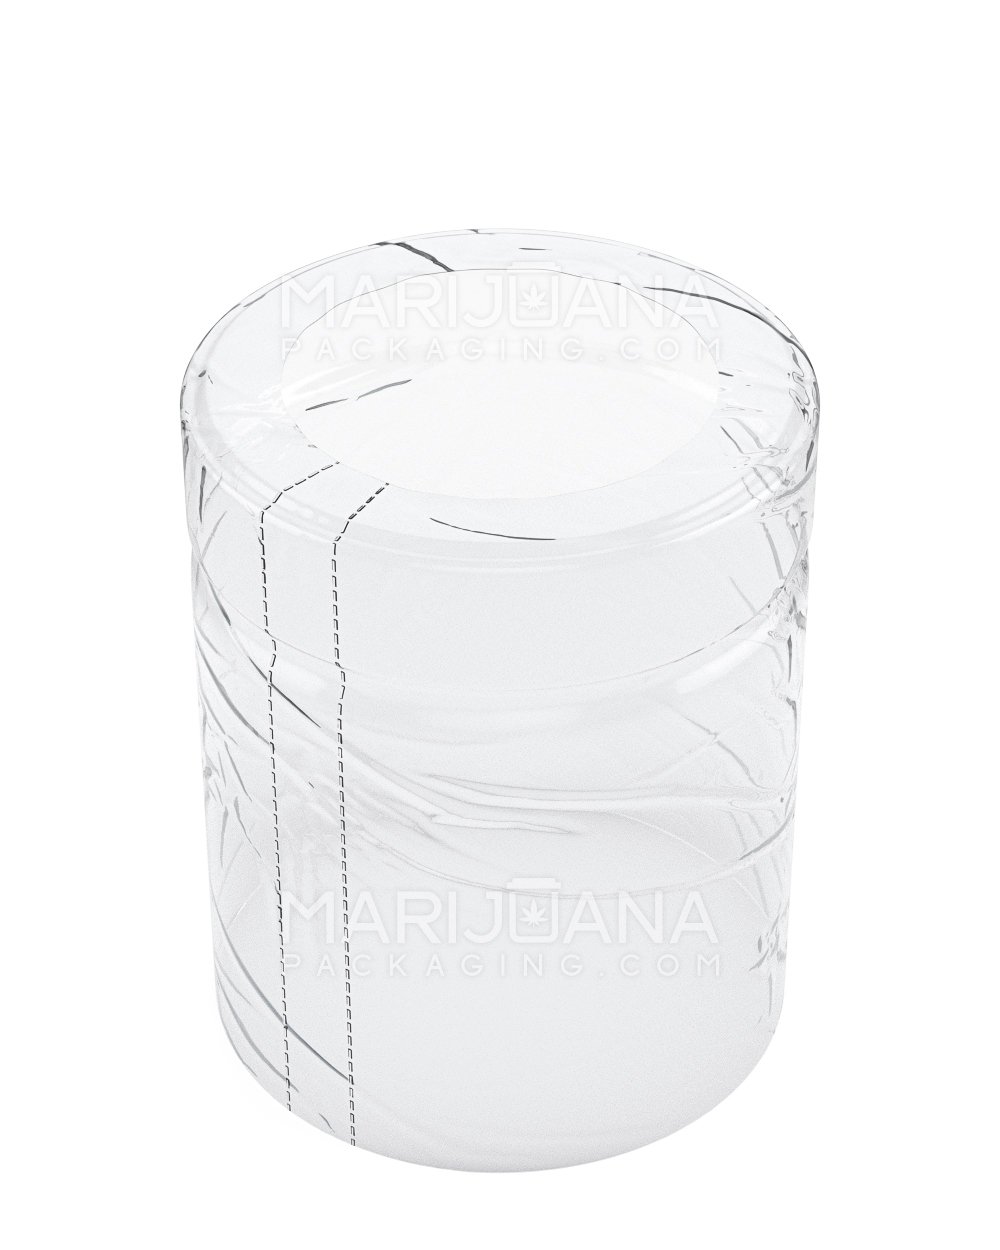 Tamper Evident | Heat Shrink Bands for Jars | 4oz - Clear Plastic - 1000 Count - 1